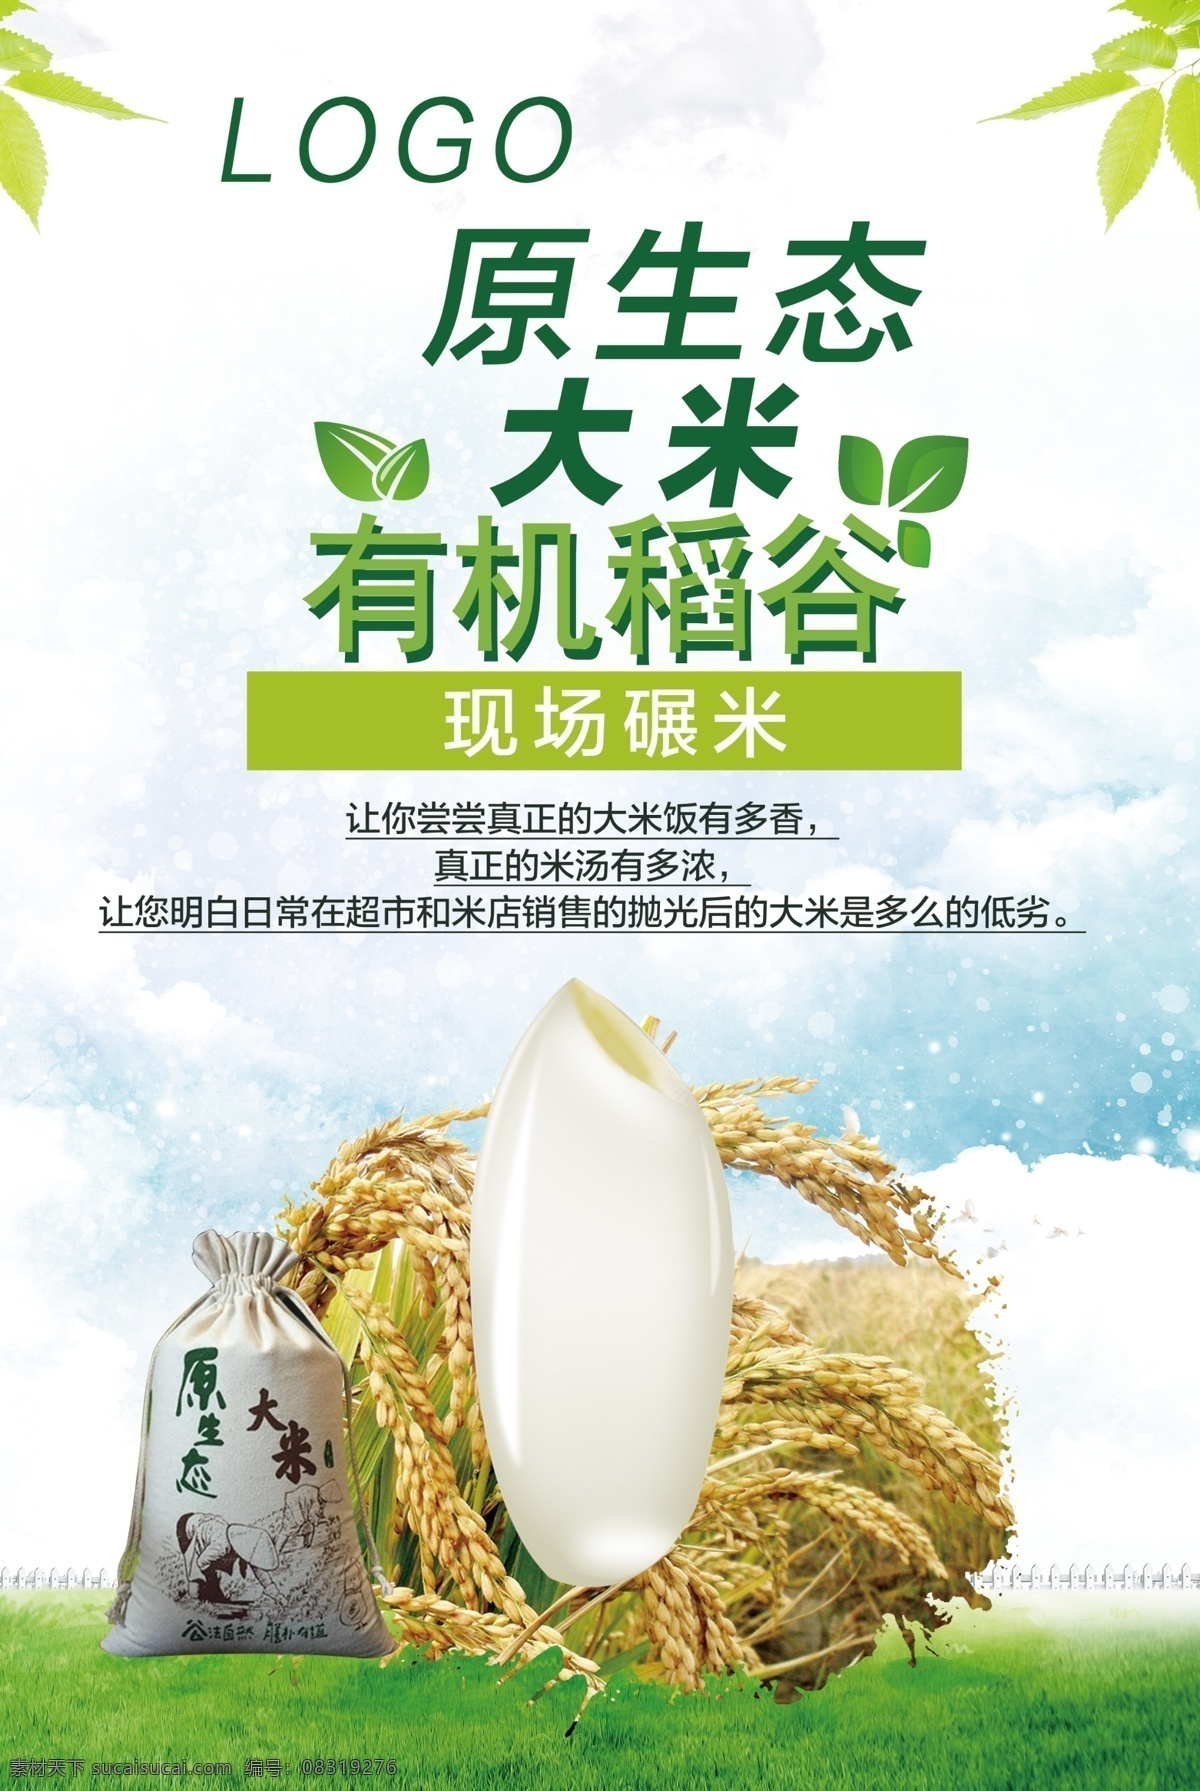 原生态 大米 有机 稻谷 原生态大米 有机稻谷 绿色稻谷 稻子 室外广告设计